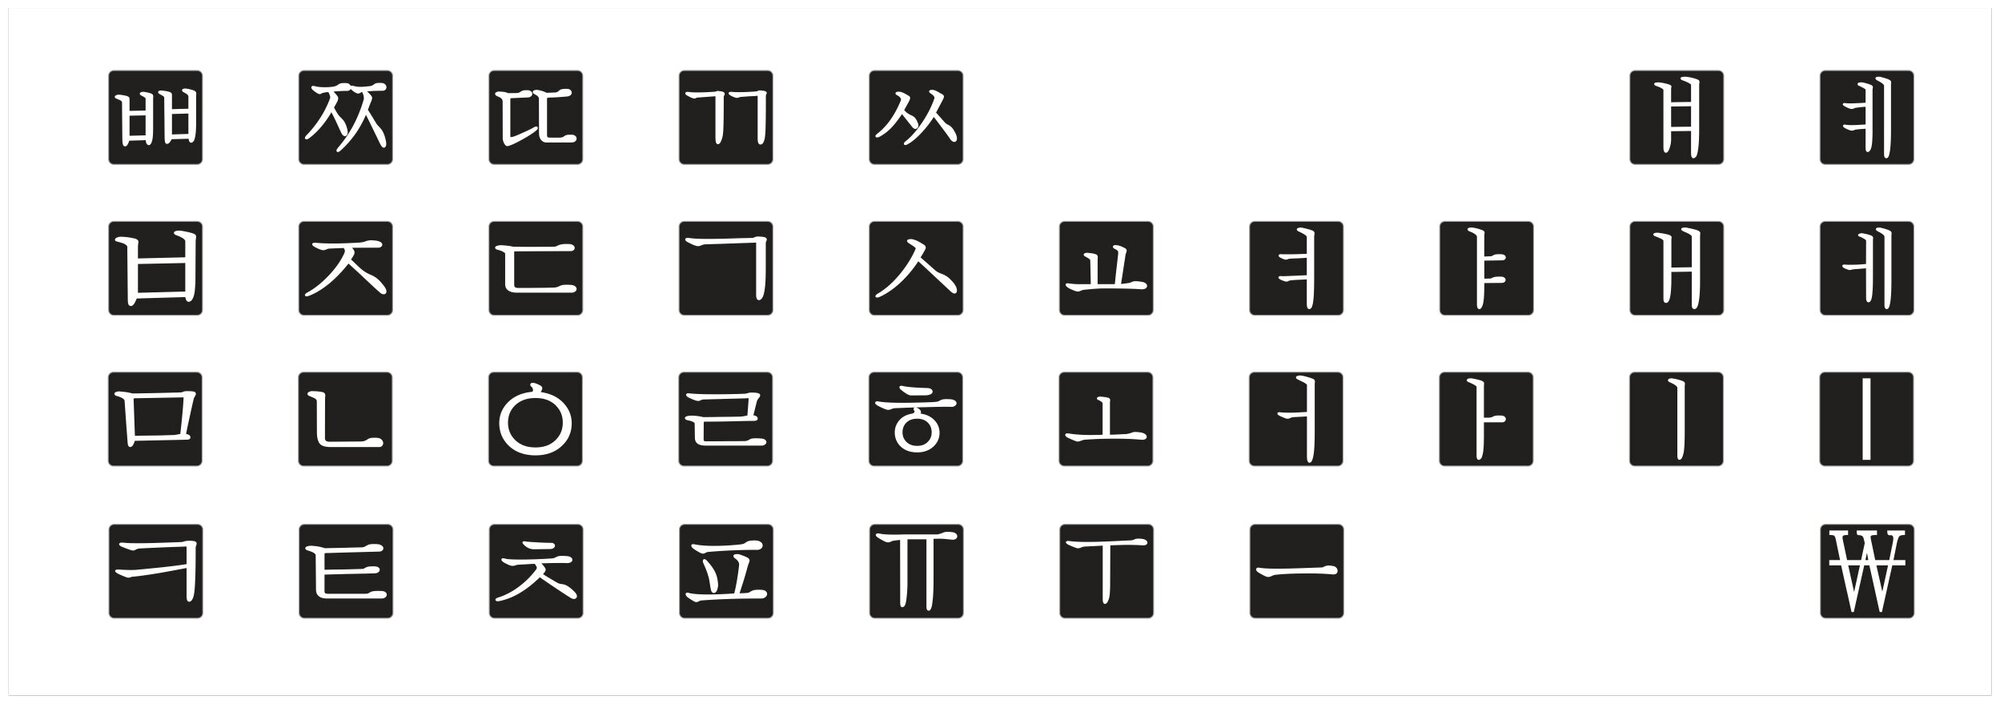 Корейский набор мини наклеек на клавиатуру